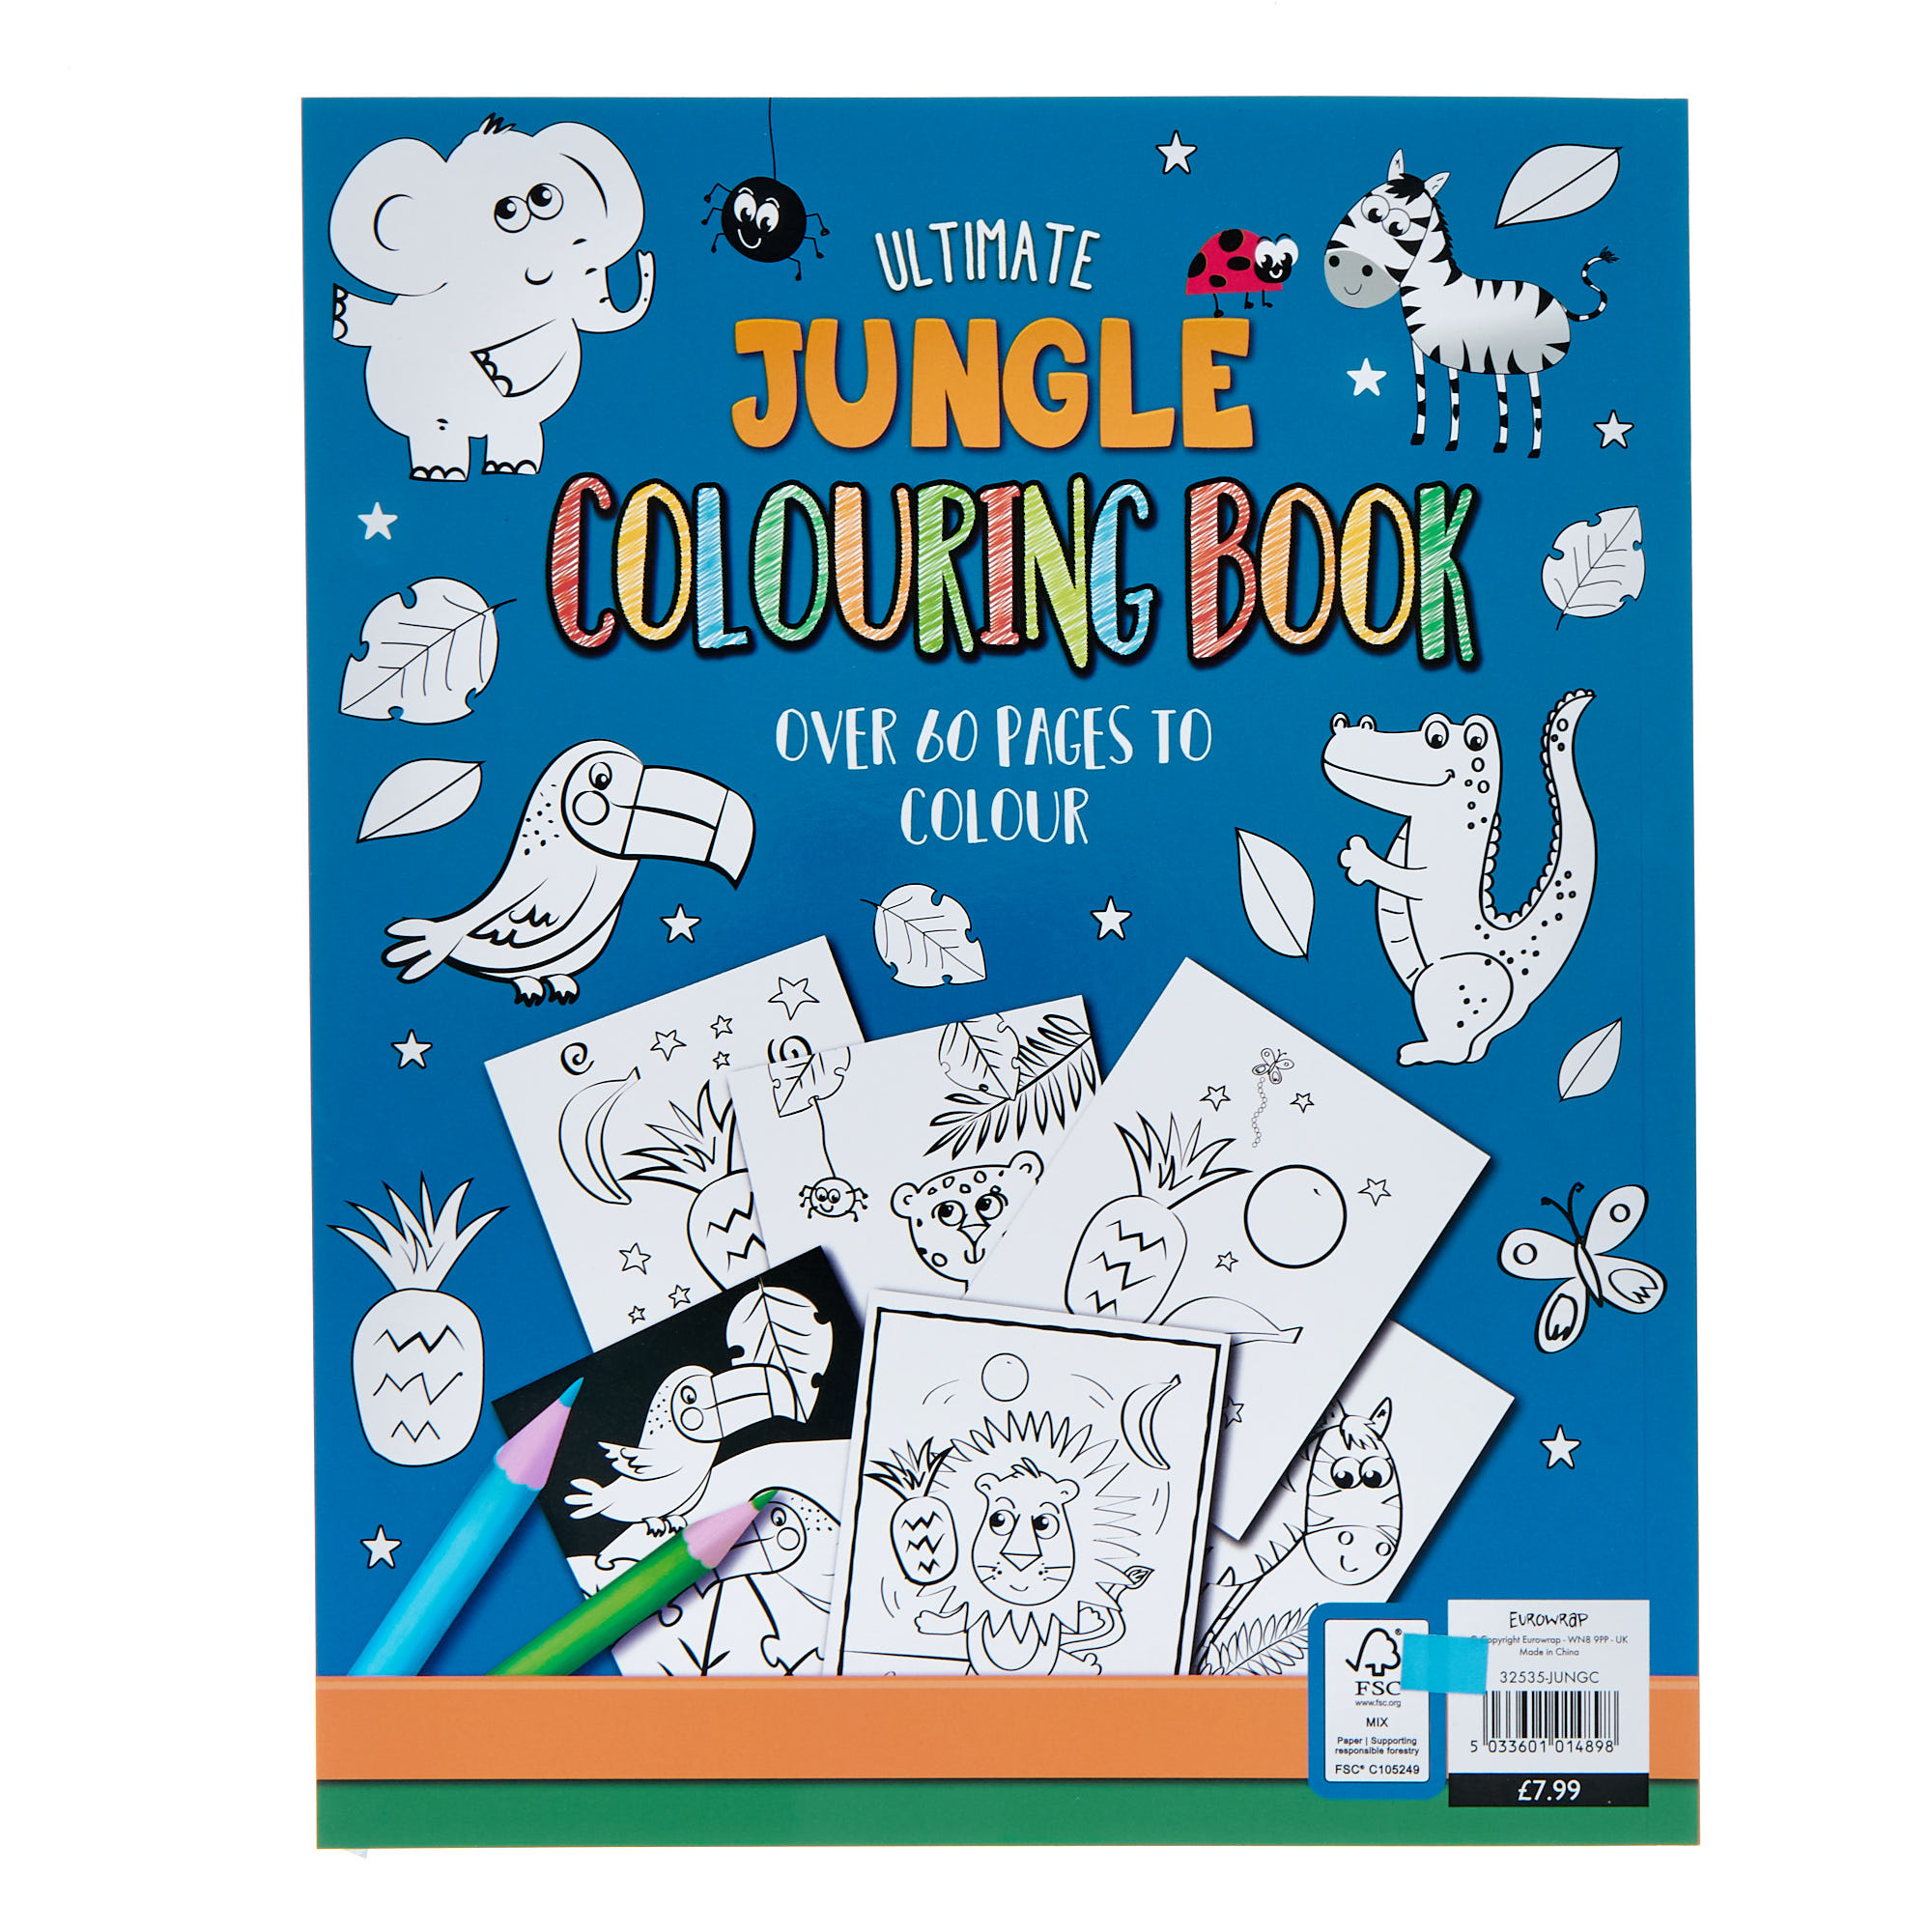 Ultimate Jungle Colouring Book